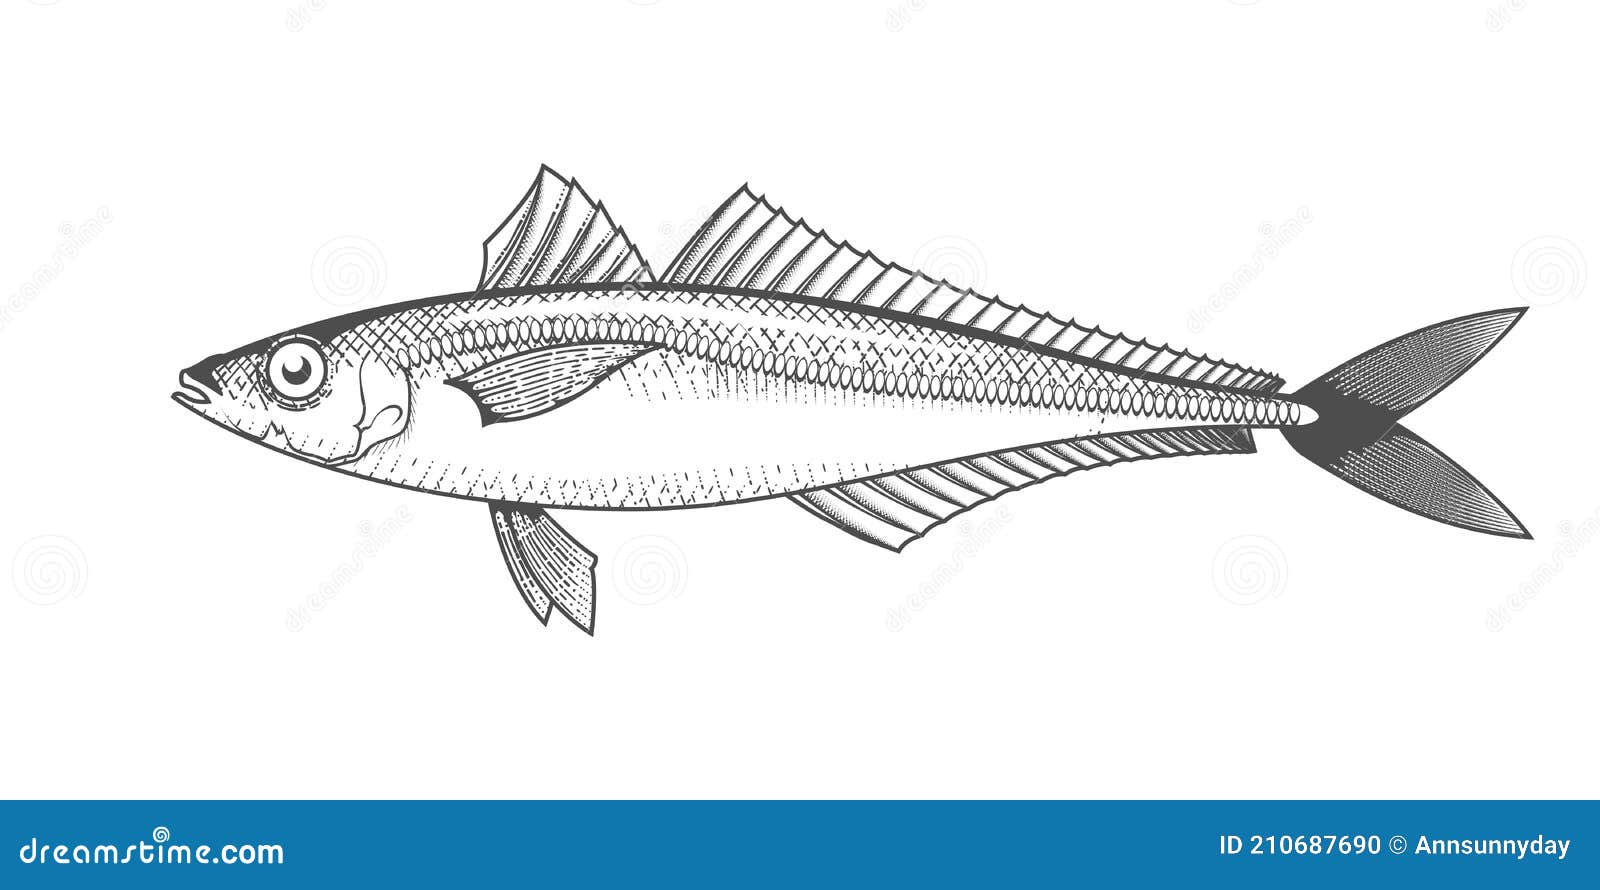 Horse mackerel stock illustrations â horse mackerel stock illustrations vectors clipart